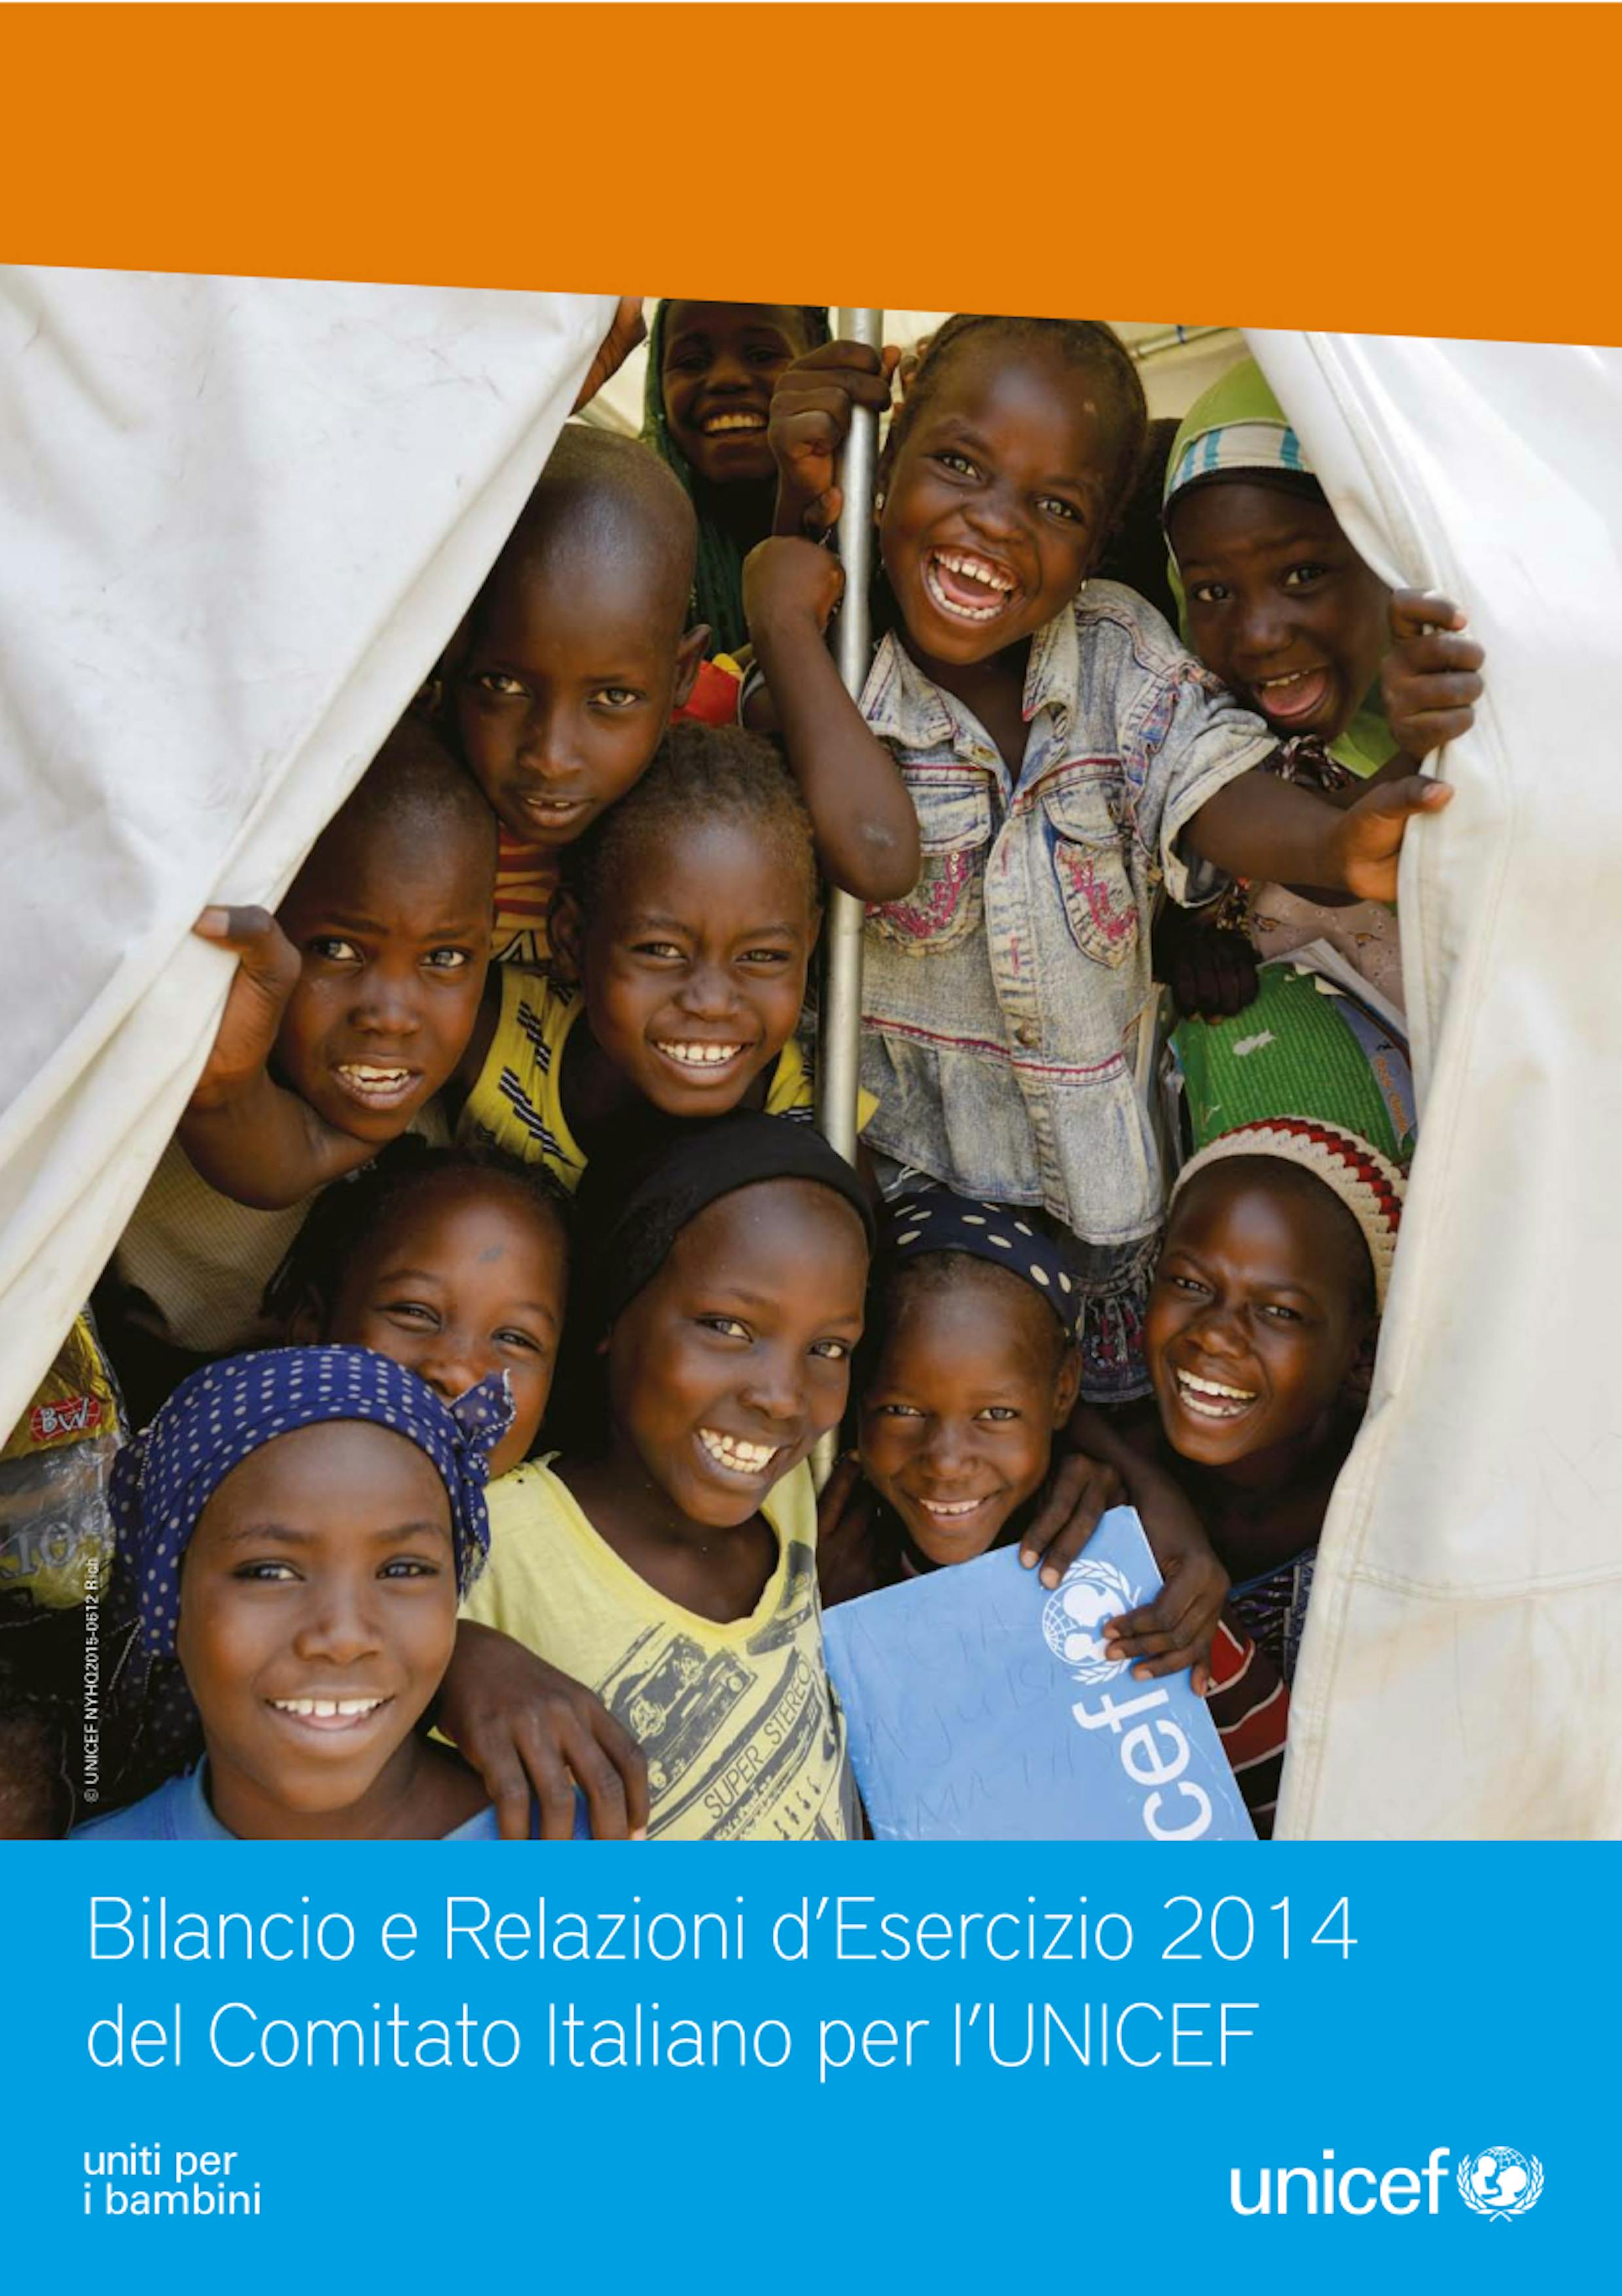 Bilancio e Relazioni d'Esercizio UNICEF Italia 2014